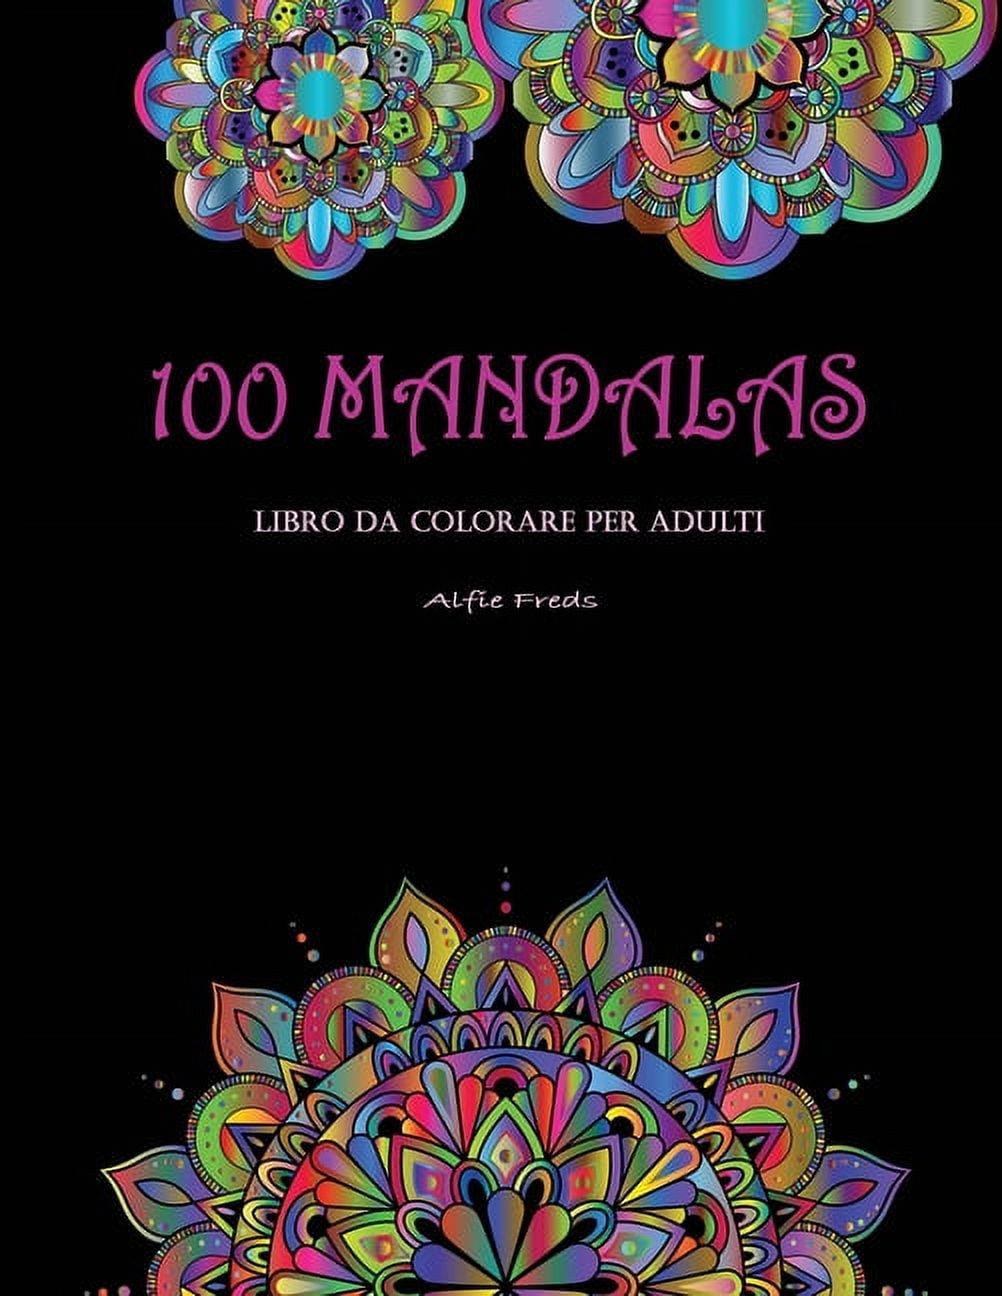 100 Mandalas Libro Da Colorare Per Adulti : Mandala belli, rilassanti e  antistress da colorare - Fantastici disegni da colorare per passatempo e  presenza. (Paperback) 